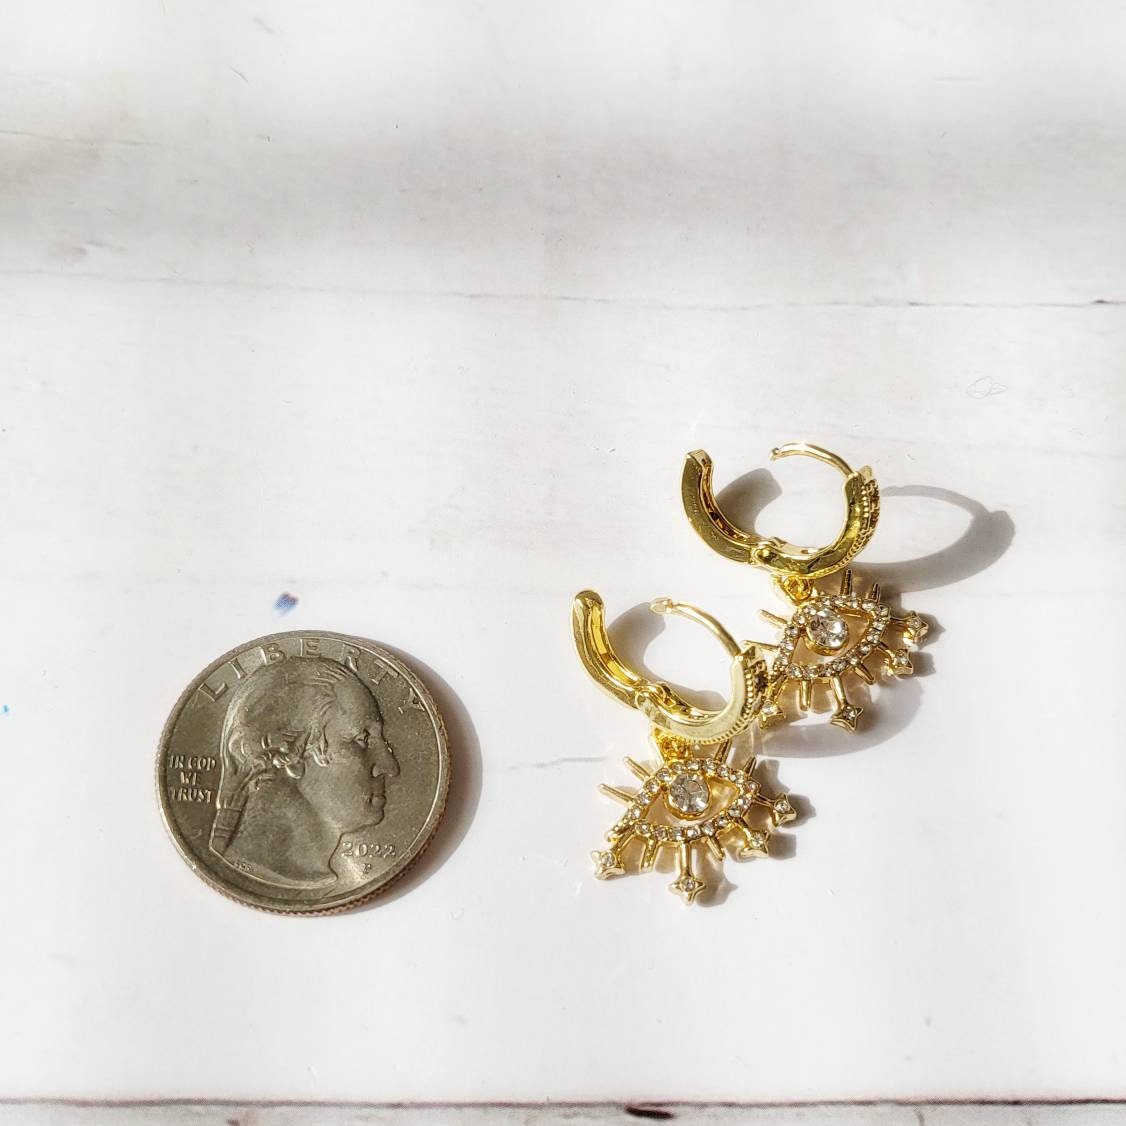 EVIL EYE 14K Gold Earrings | Minimalist Statement Dangle Earrings | Evil Eye Jewelry | Boho Hippie Huggie Hoop | Small Gold Hoop Earrings